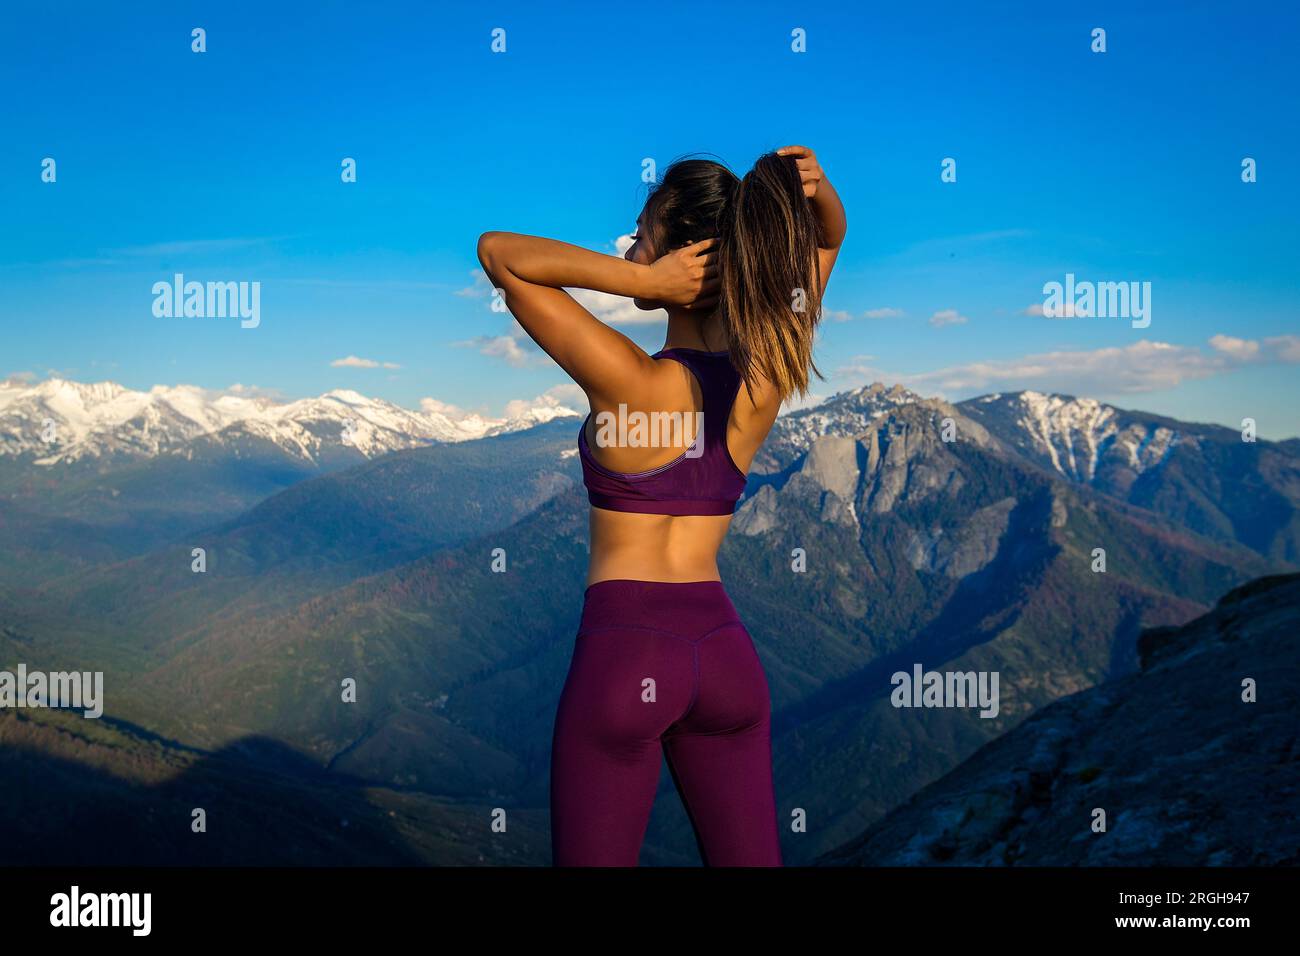 Jeune femme ajustant son queue sur une montagne Banque D'Images